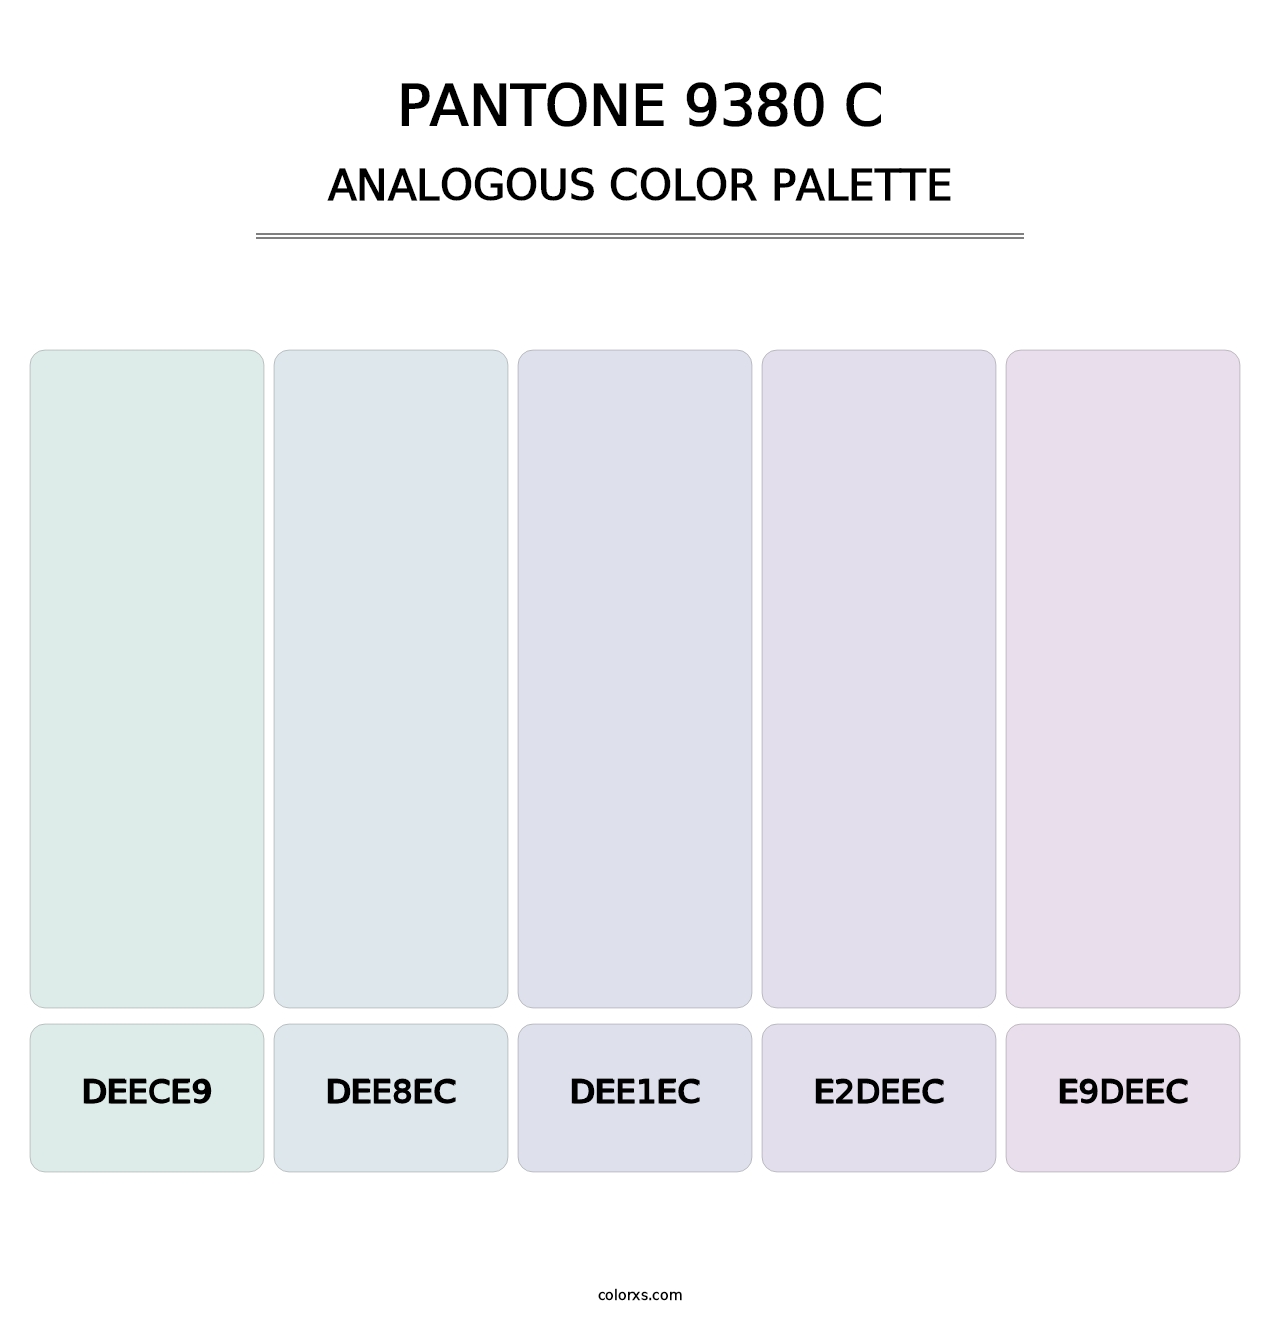 PANTONE 9380 C - Analogous Color Palette